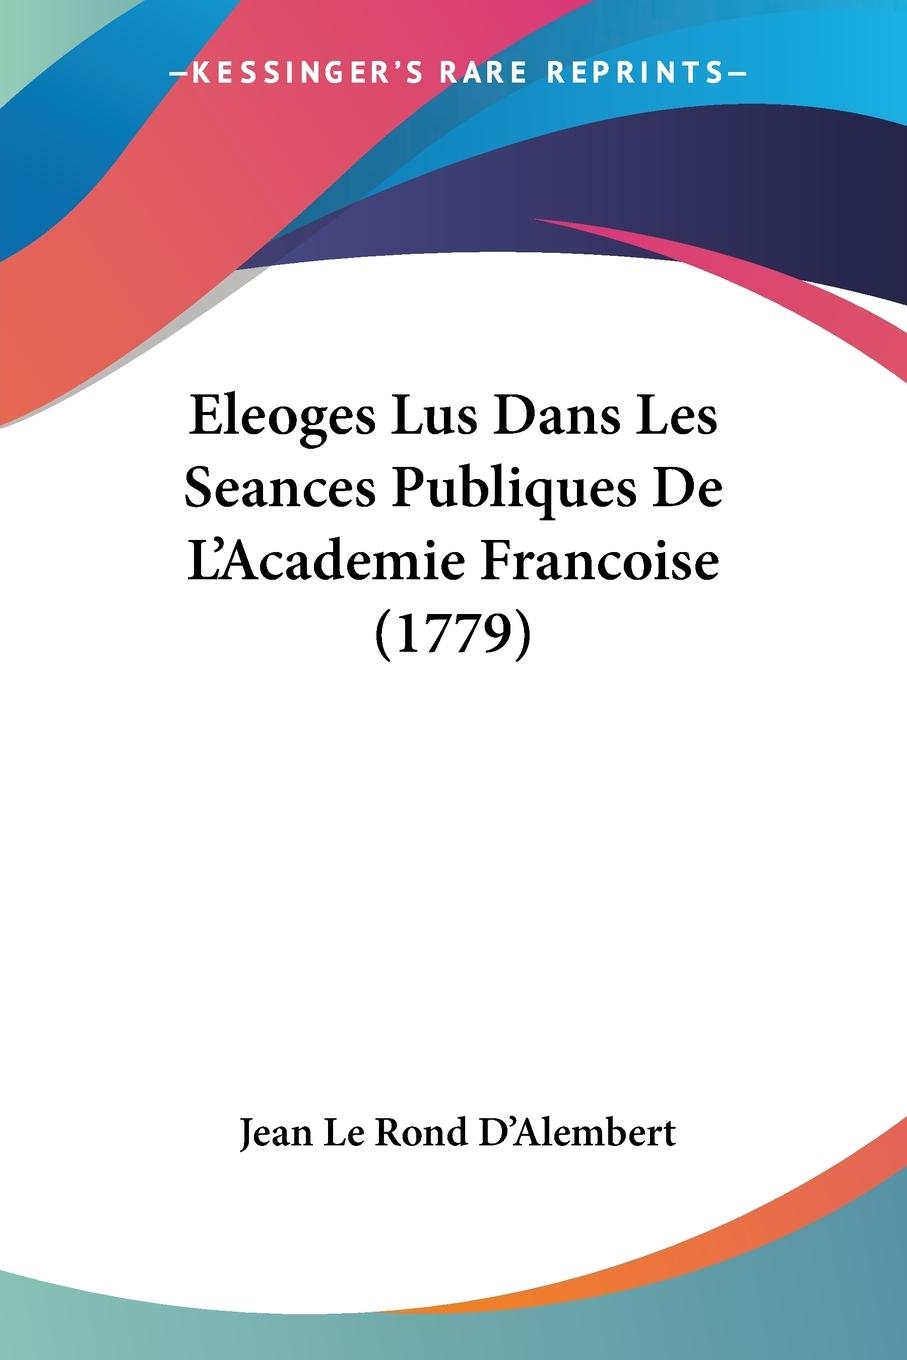 Eleoges Lus Dans Les Seances Publiques De L Academie Francoise (1779) - D Alembert, Jean Le Rond